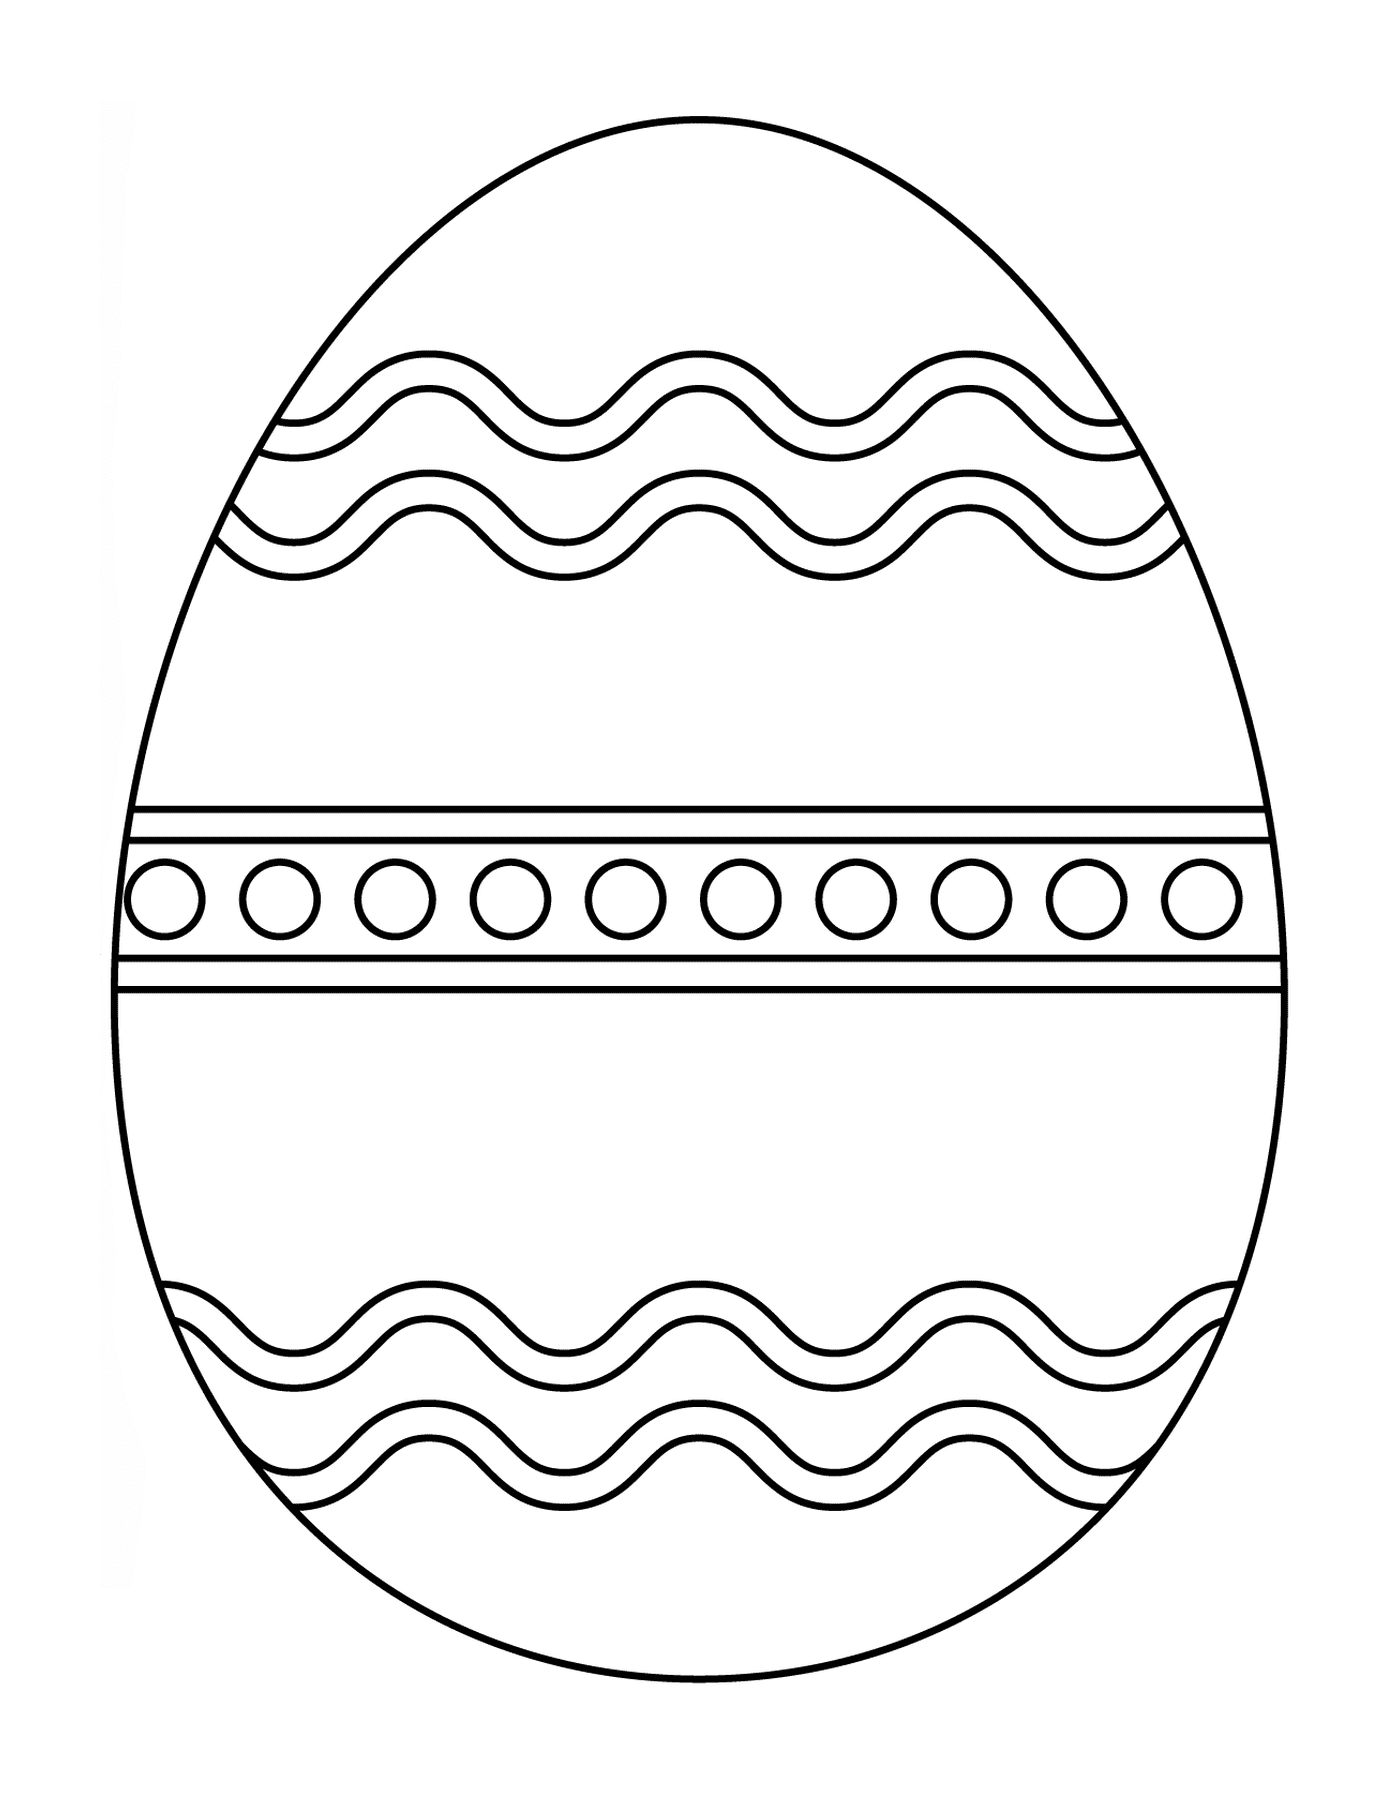  Пасхальное яйцо с абстрактным рисунком 3 